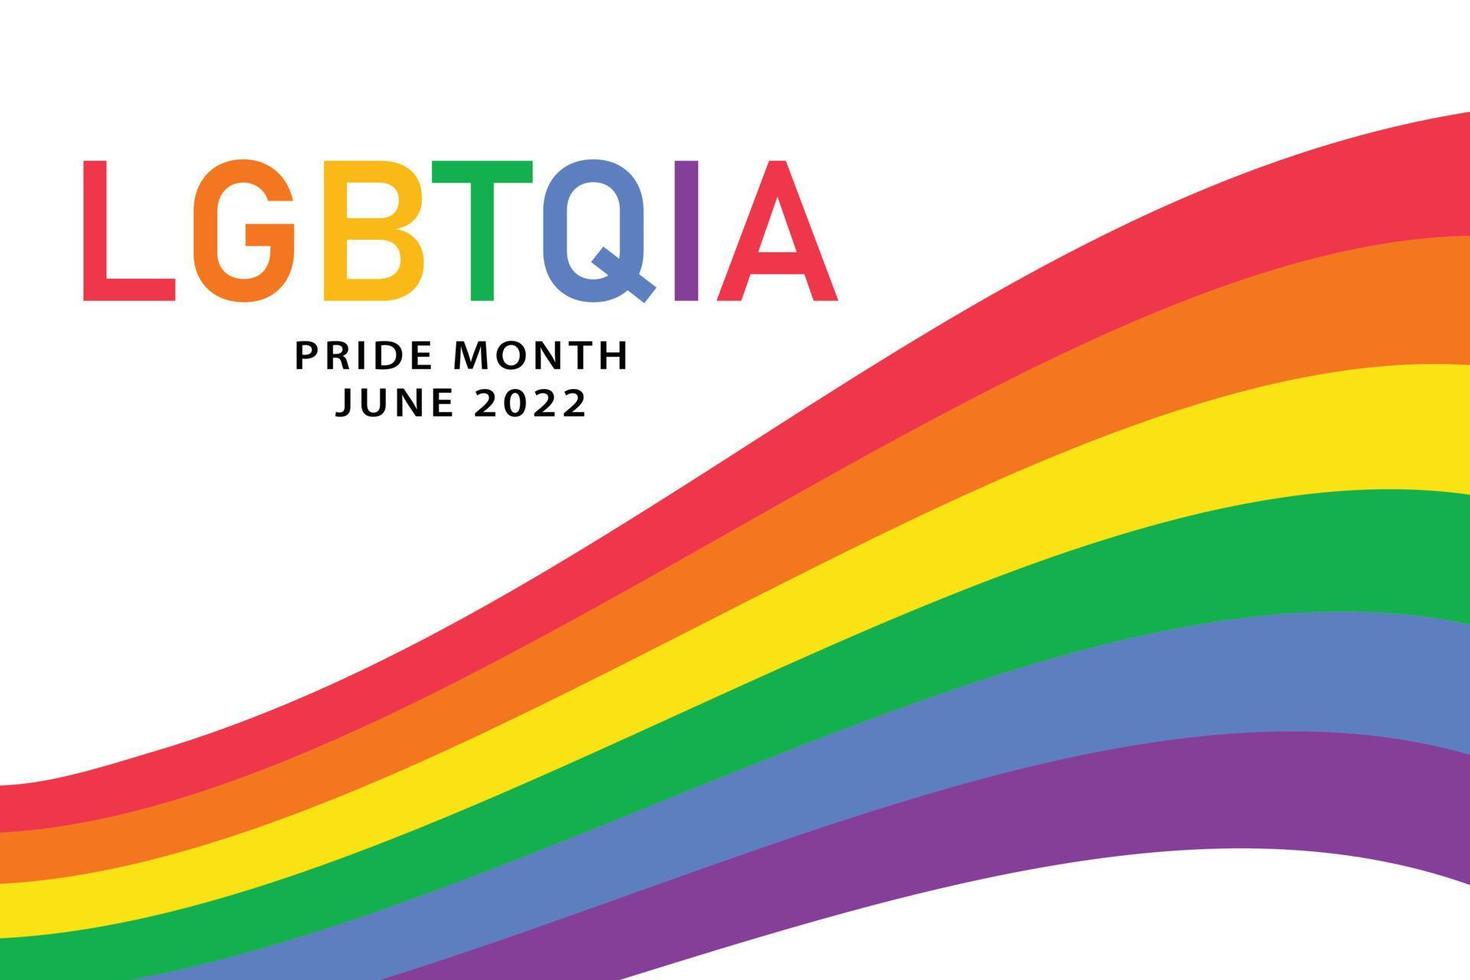 mois de fierté lgbtqia juin 2022 - modèle d'affiche horizontale avec drapeau arc-en-ciel, symbole lgbt. conception de bannière de vecteur pour les médias sociaux